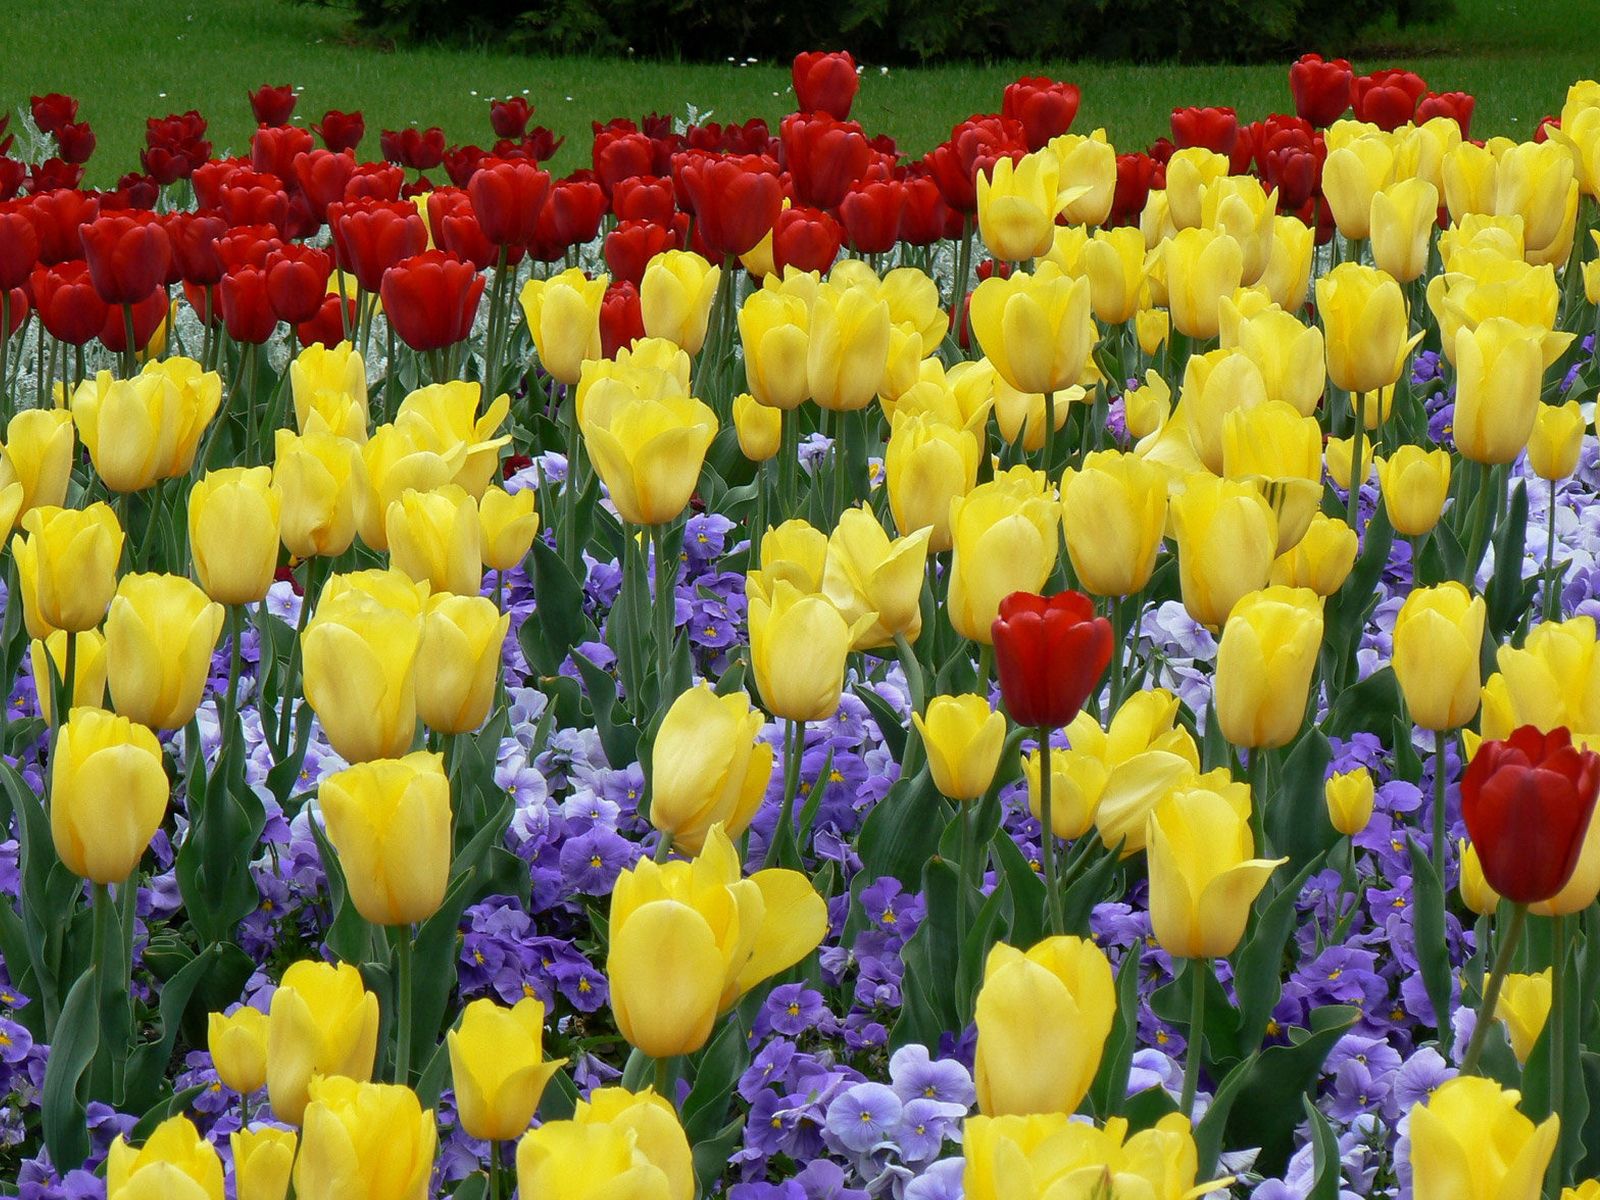 flower bed, tulips, flowers, park, beauty, flowerbed, lawn